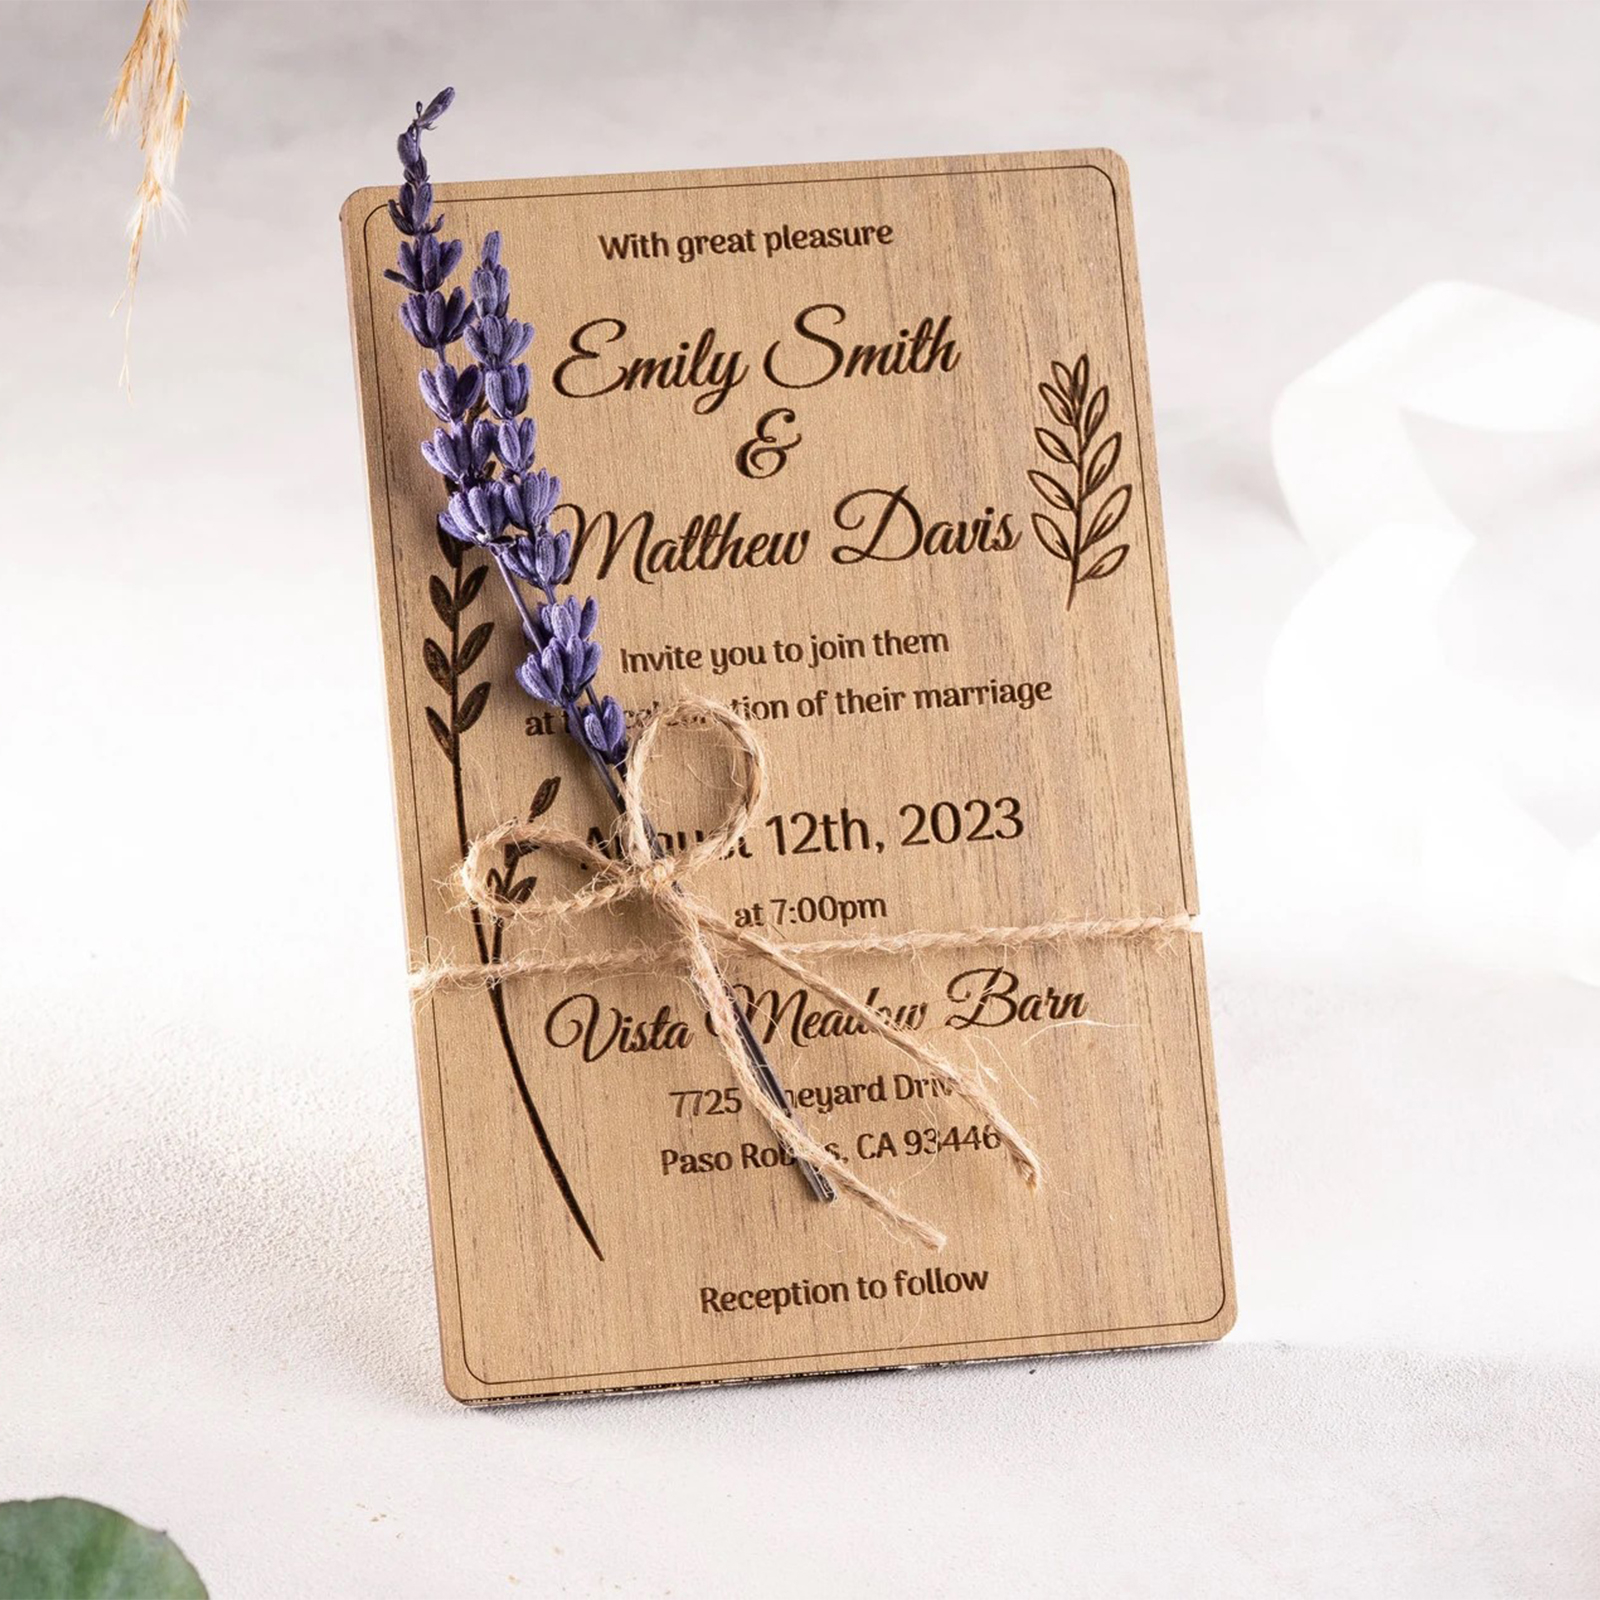 Invitatie nunta din lemn- model elegant si modern